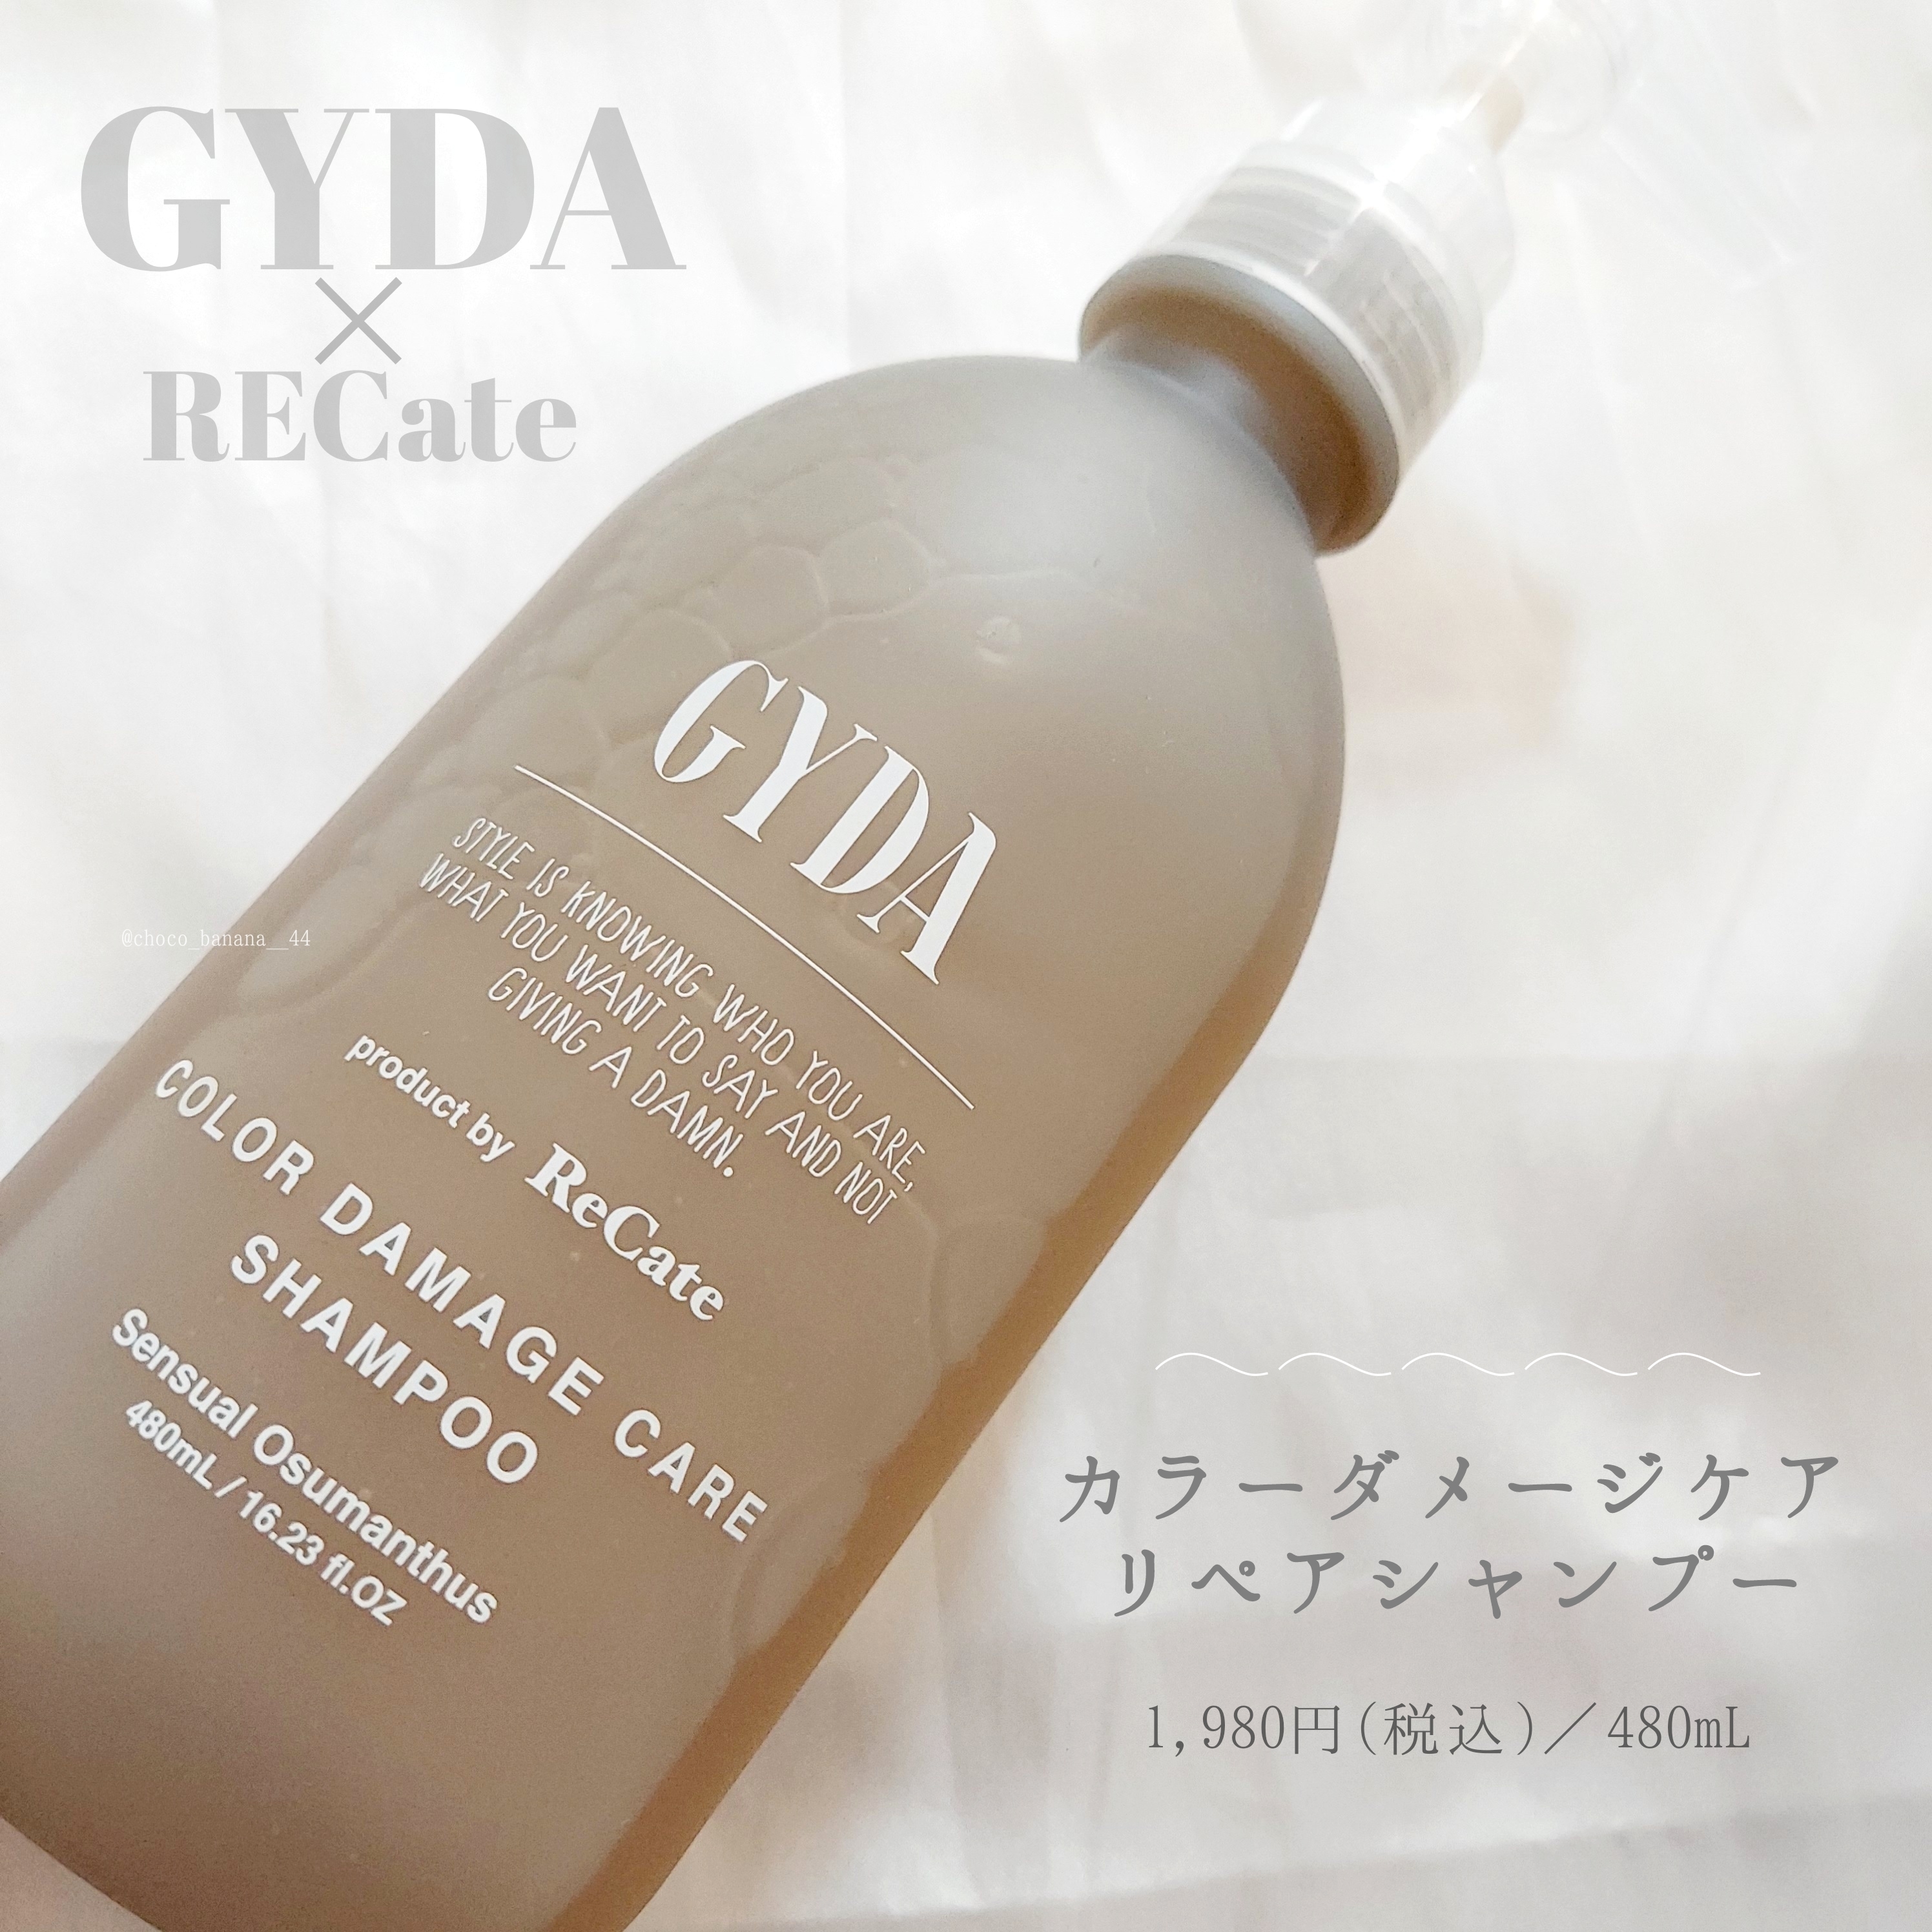 GYDA×ReCateカラーダメージケア リペアシリーズを使ったししさんのクチコミ画像4